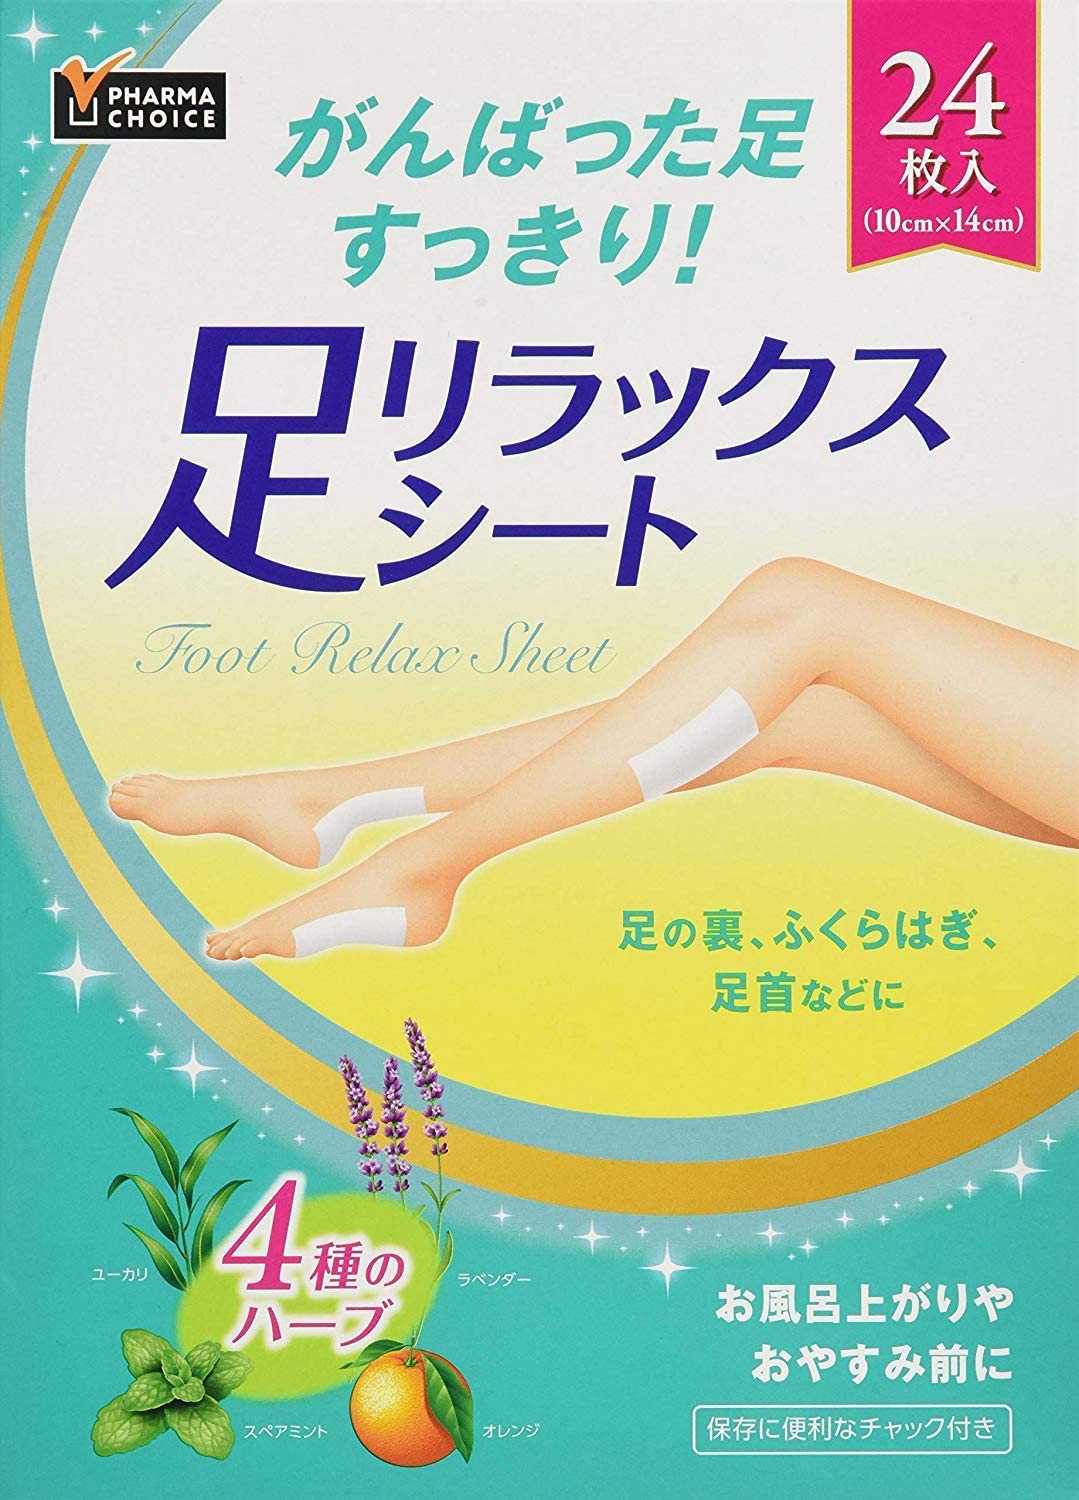 Охлаждающий пластырь при усталости и тяжести в ногах Pharma choice Foot Relax Sheet, 24 шт